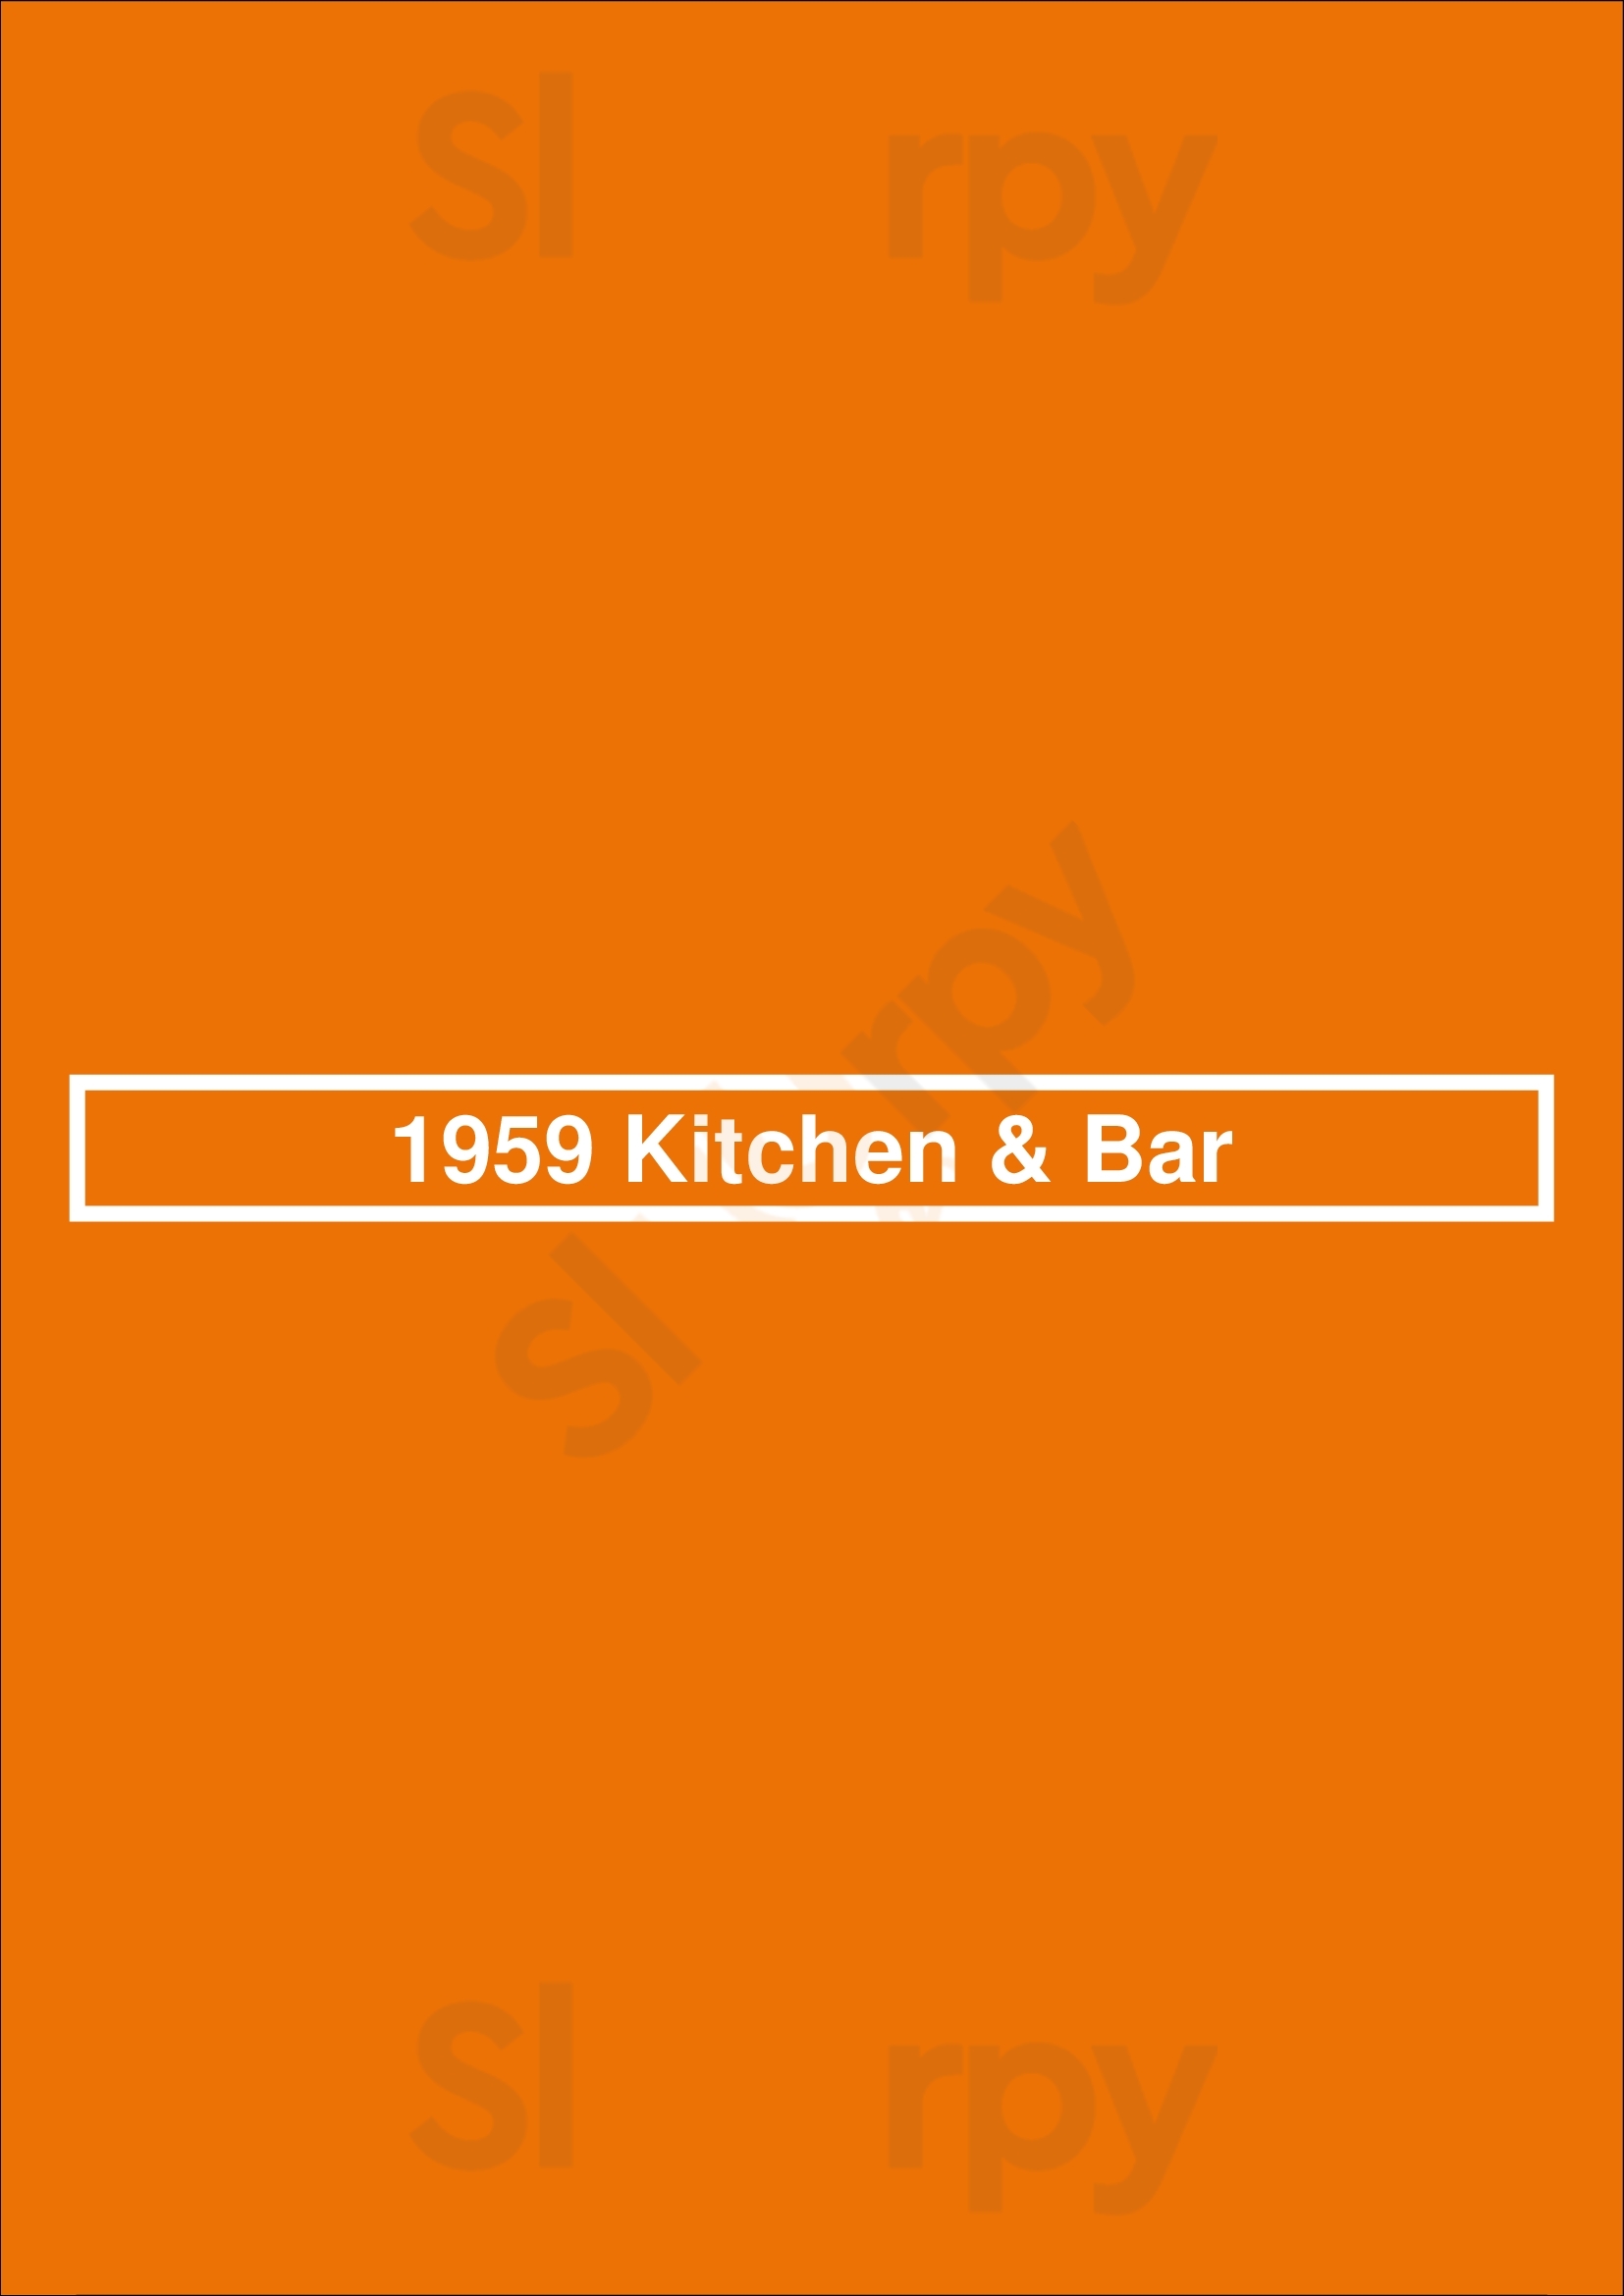 1959 Kitchen & Bar Chicago Menu - 1